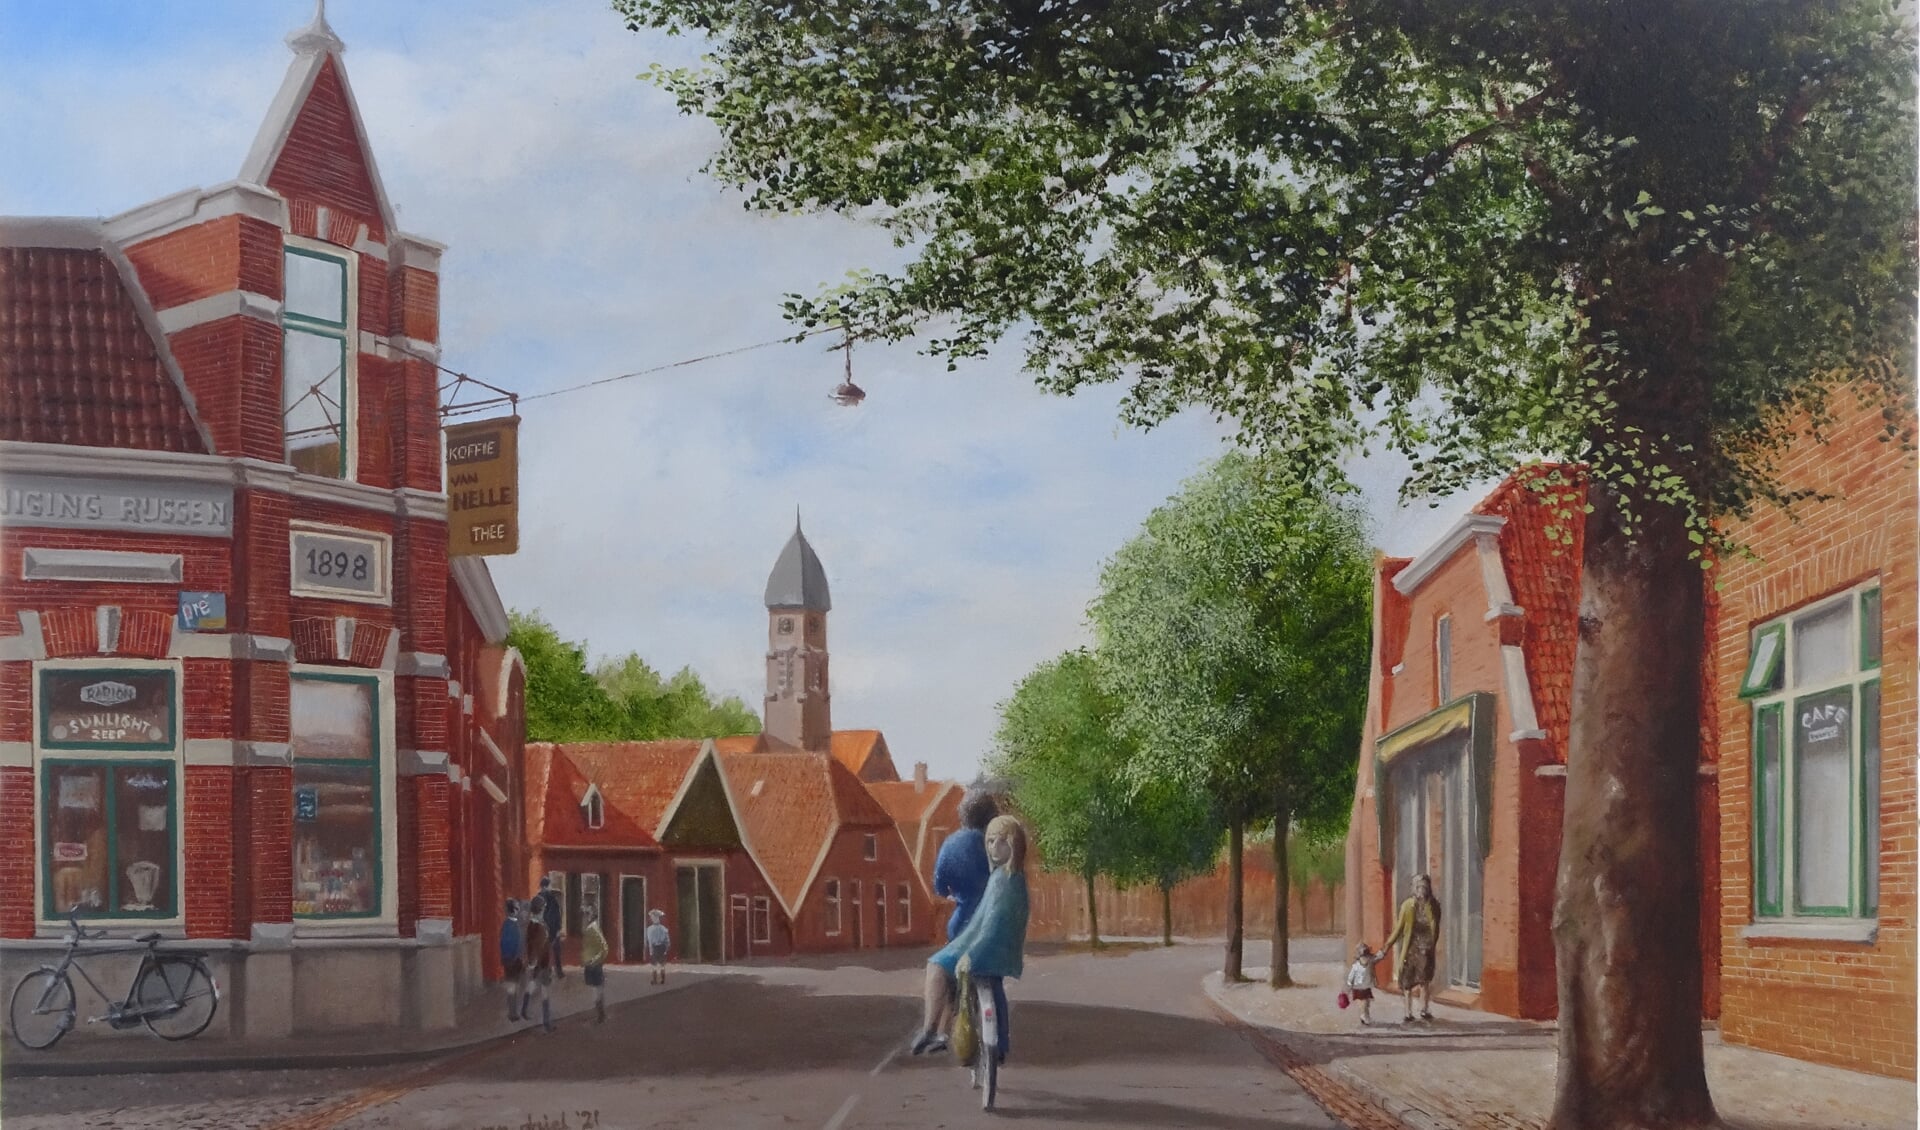 Rien van Driel schildert nu vooral Rijssen uit vroeger dagen zoals de Coöperatie aan de Haarstraat